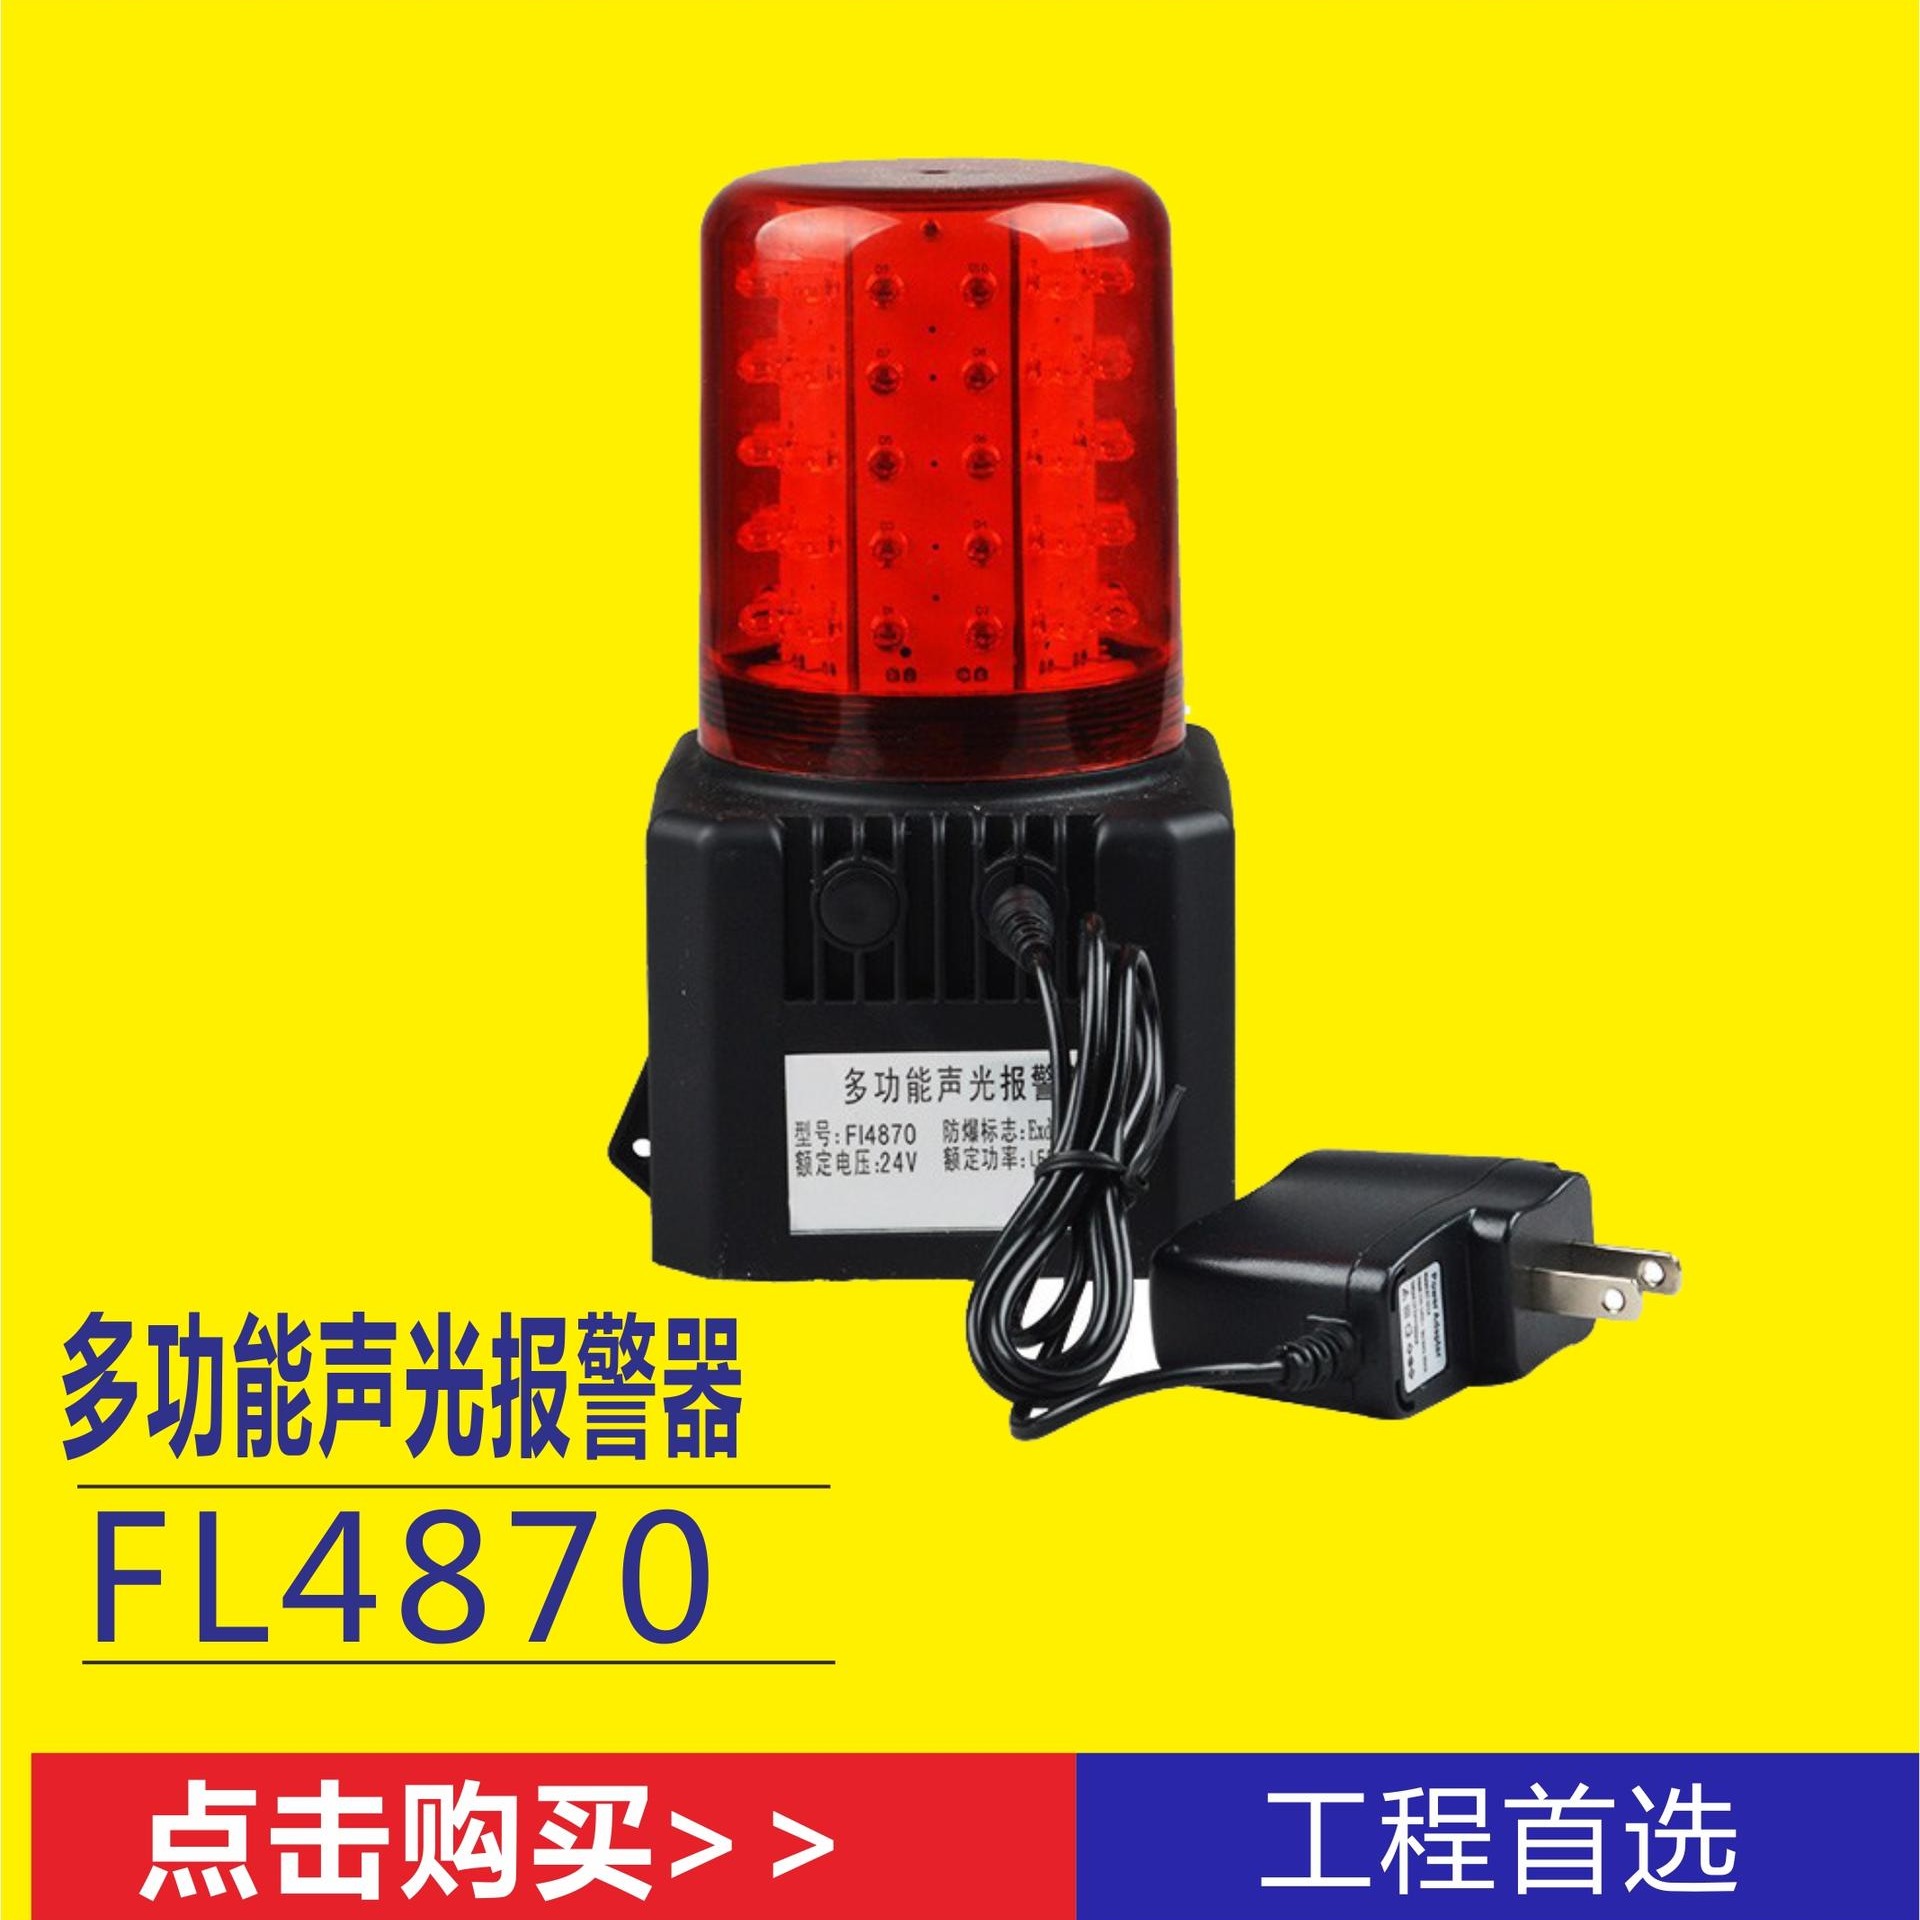 海洋王FL4870/LZ2多功能声光灯 铁路车辆调度光声报警提示灯 交通运输业安全警示灯 磁力吸附信号指示灯